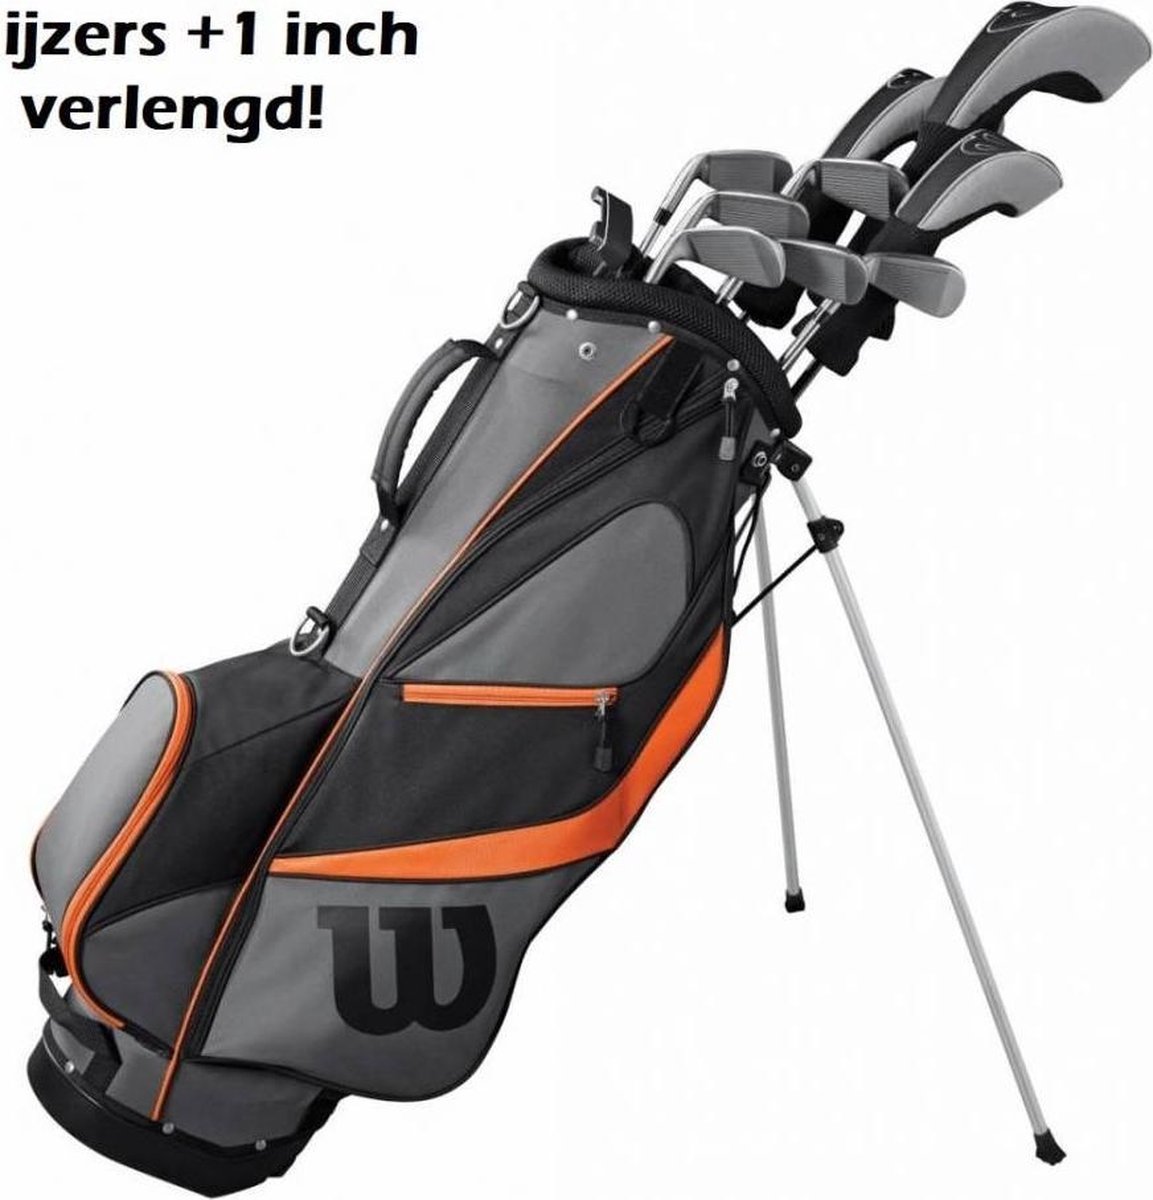 X31 Complete Golfset +1 Inch Verlengd (steel shaft) |